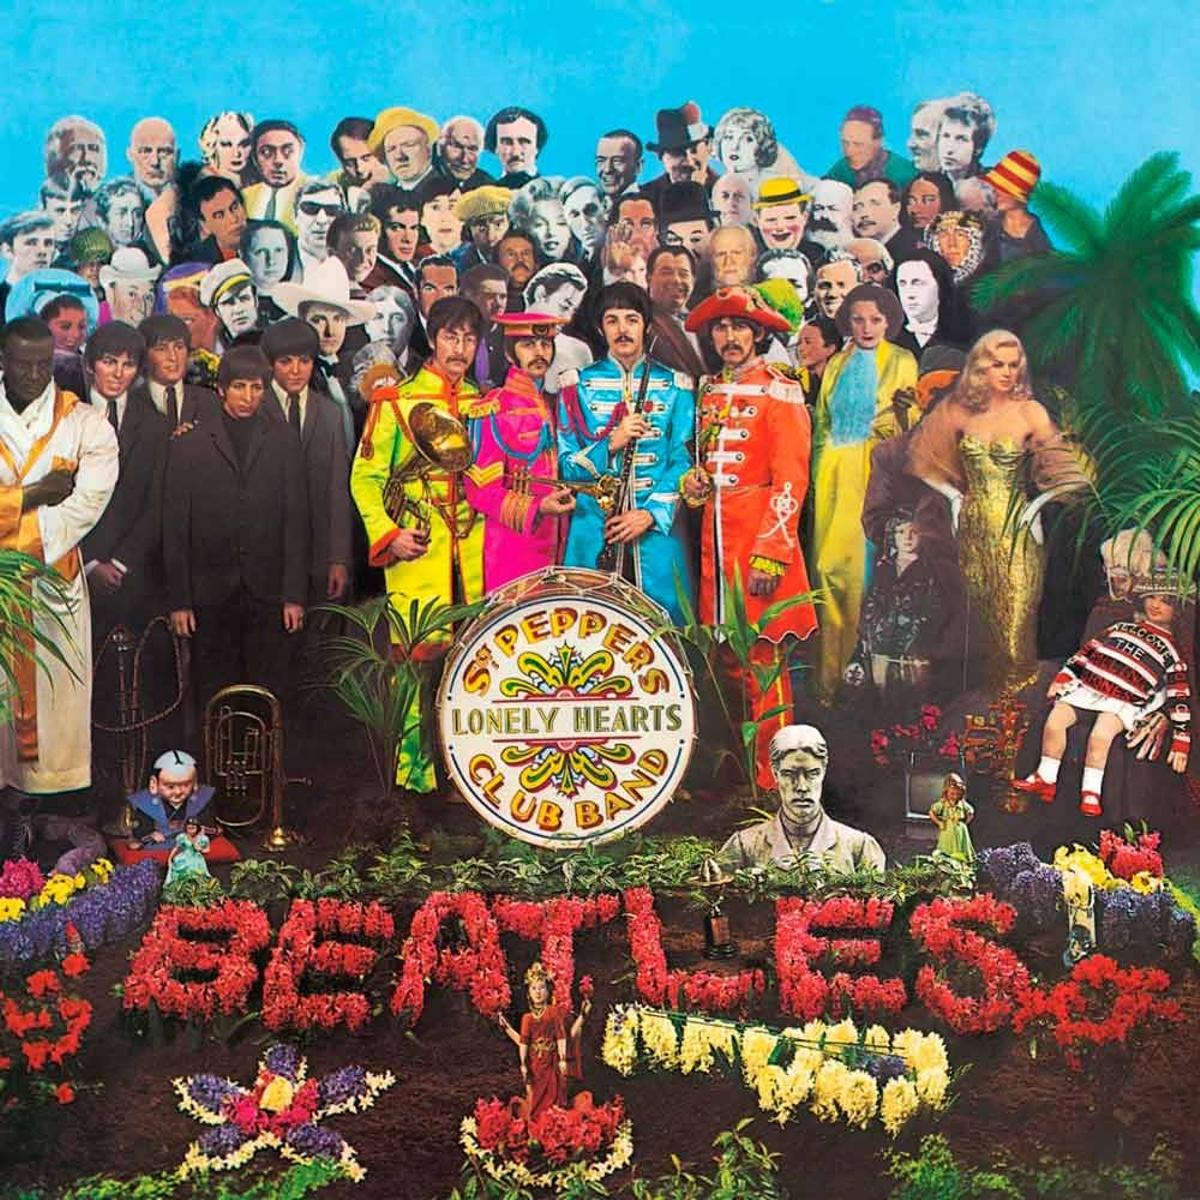 Vinilo 'Sgt. Pepper’s - Anniversary Edition' de The Beatles a la venta en Amazon. (Precio: 26,77 euros)